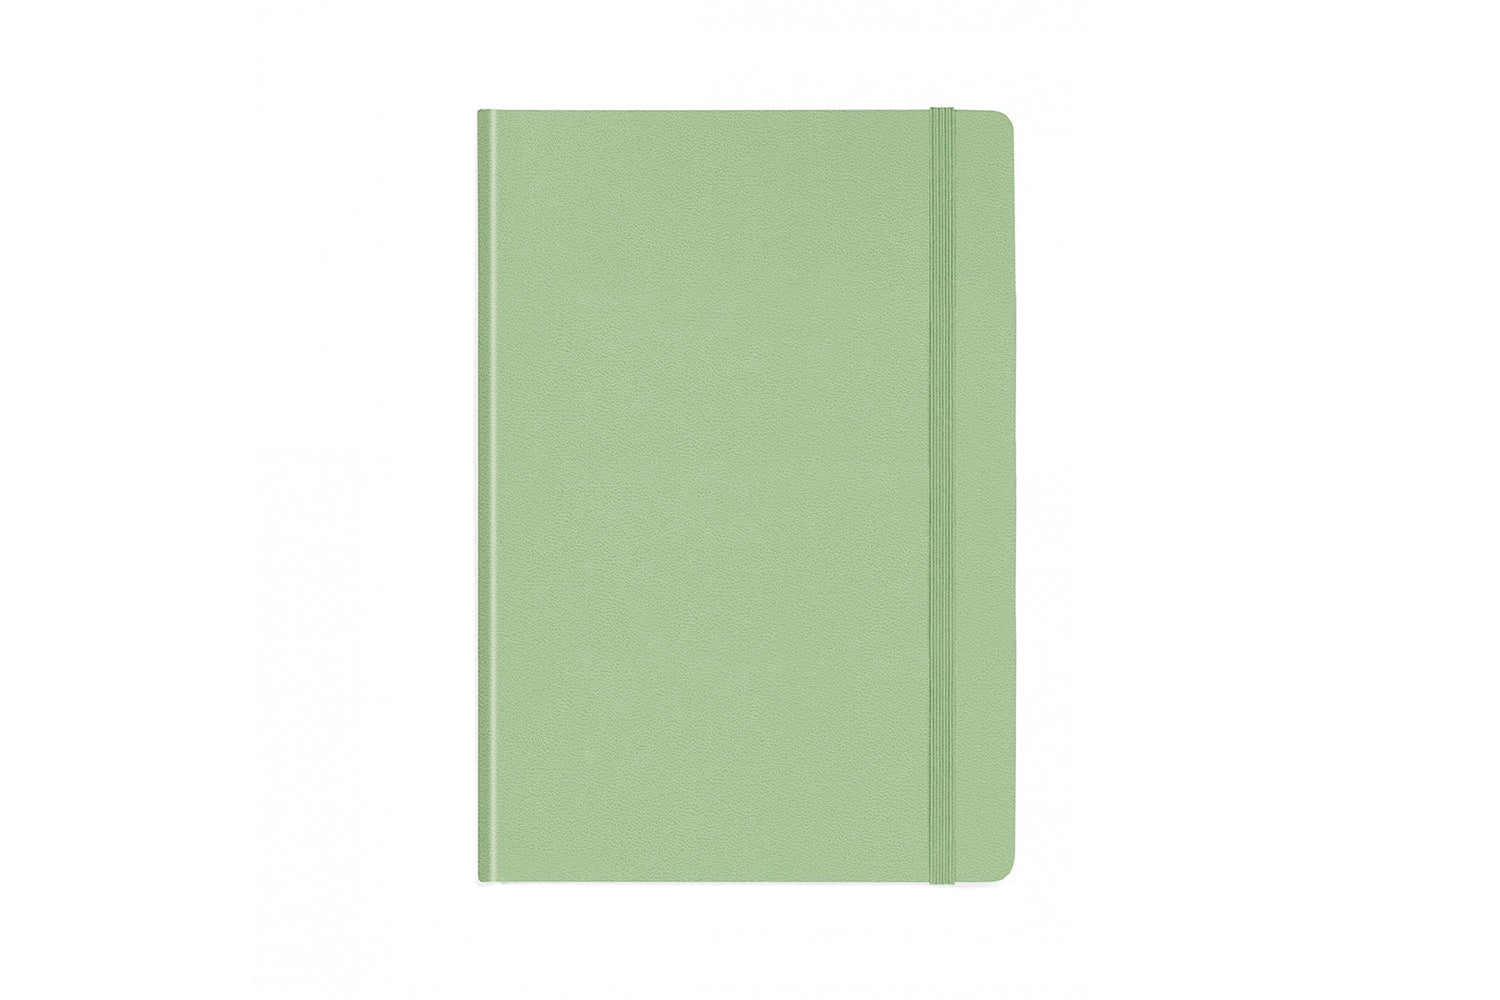 Leuchtturm 1917 Notebook Hardbound Medium (A5) 249pgs Dot Bullet Journal